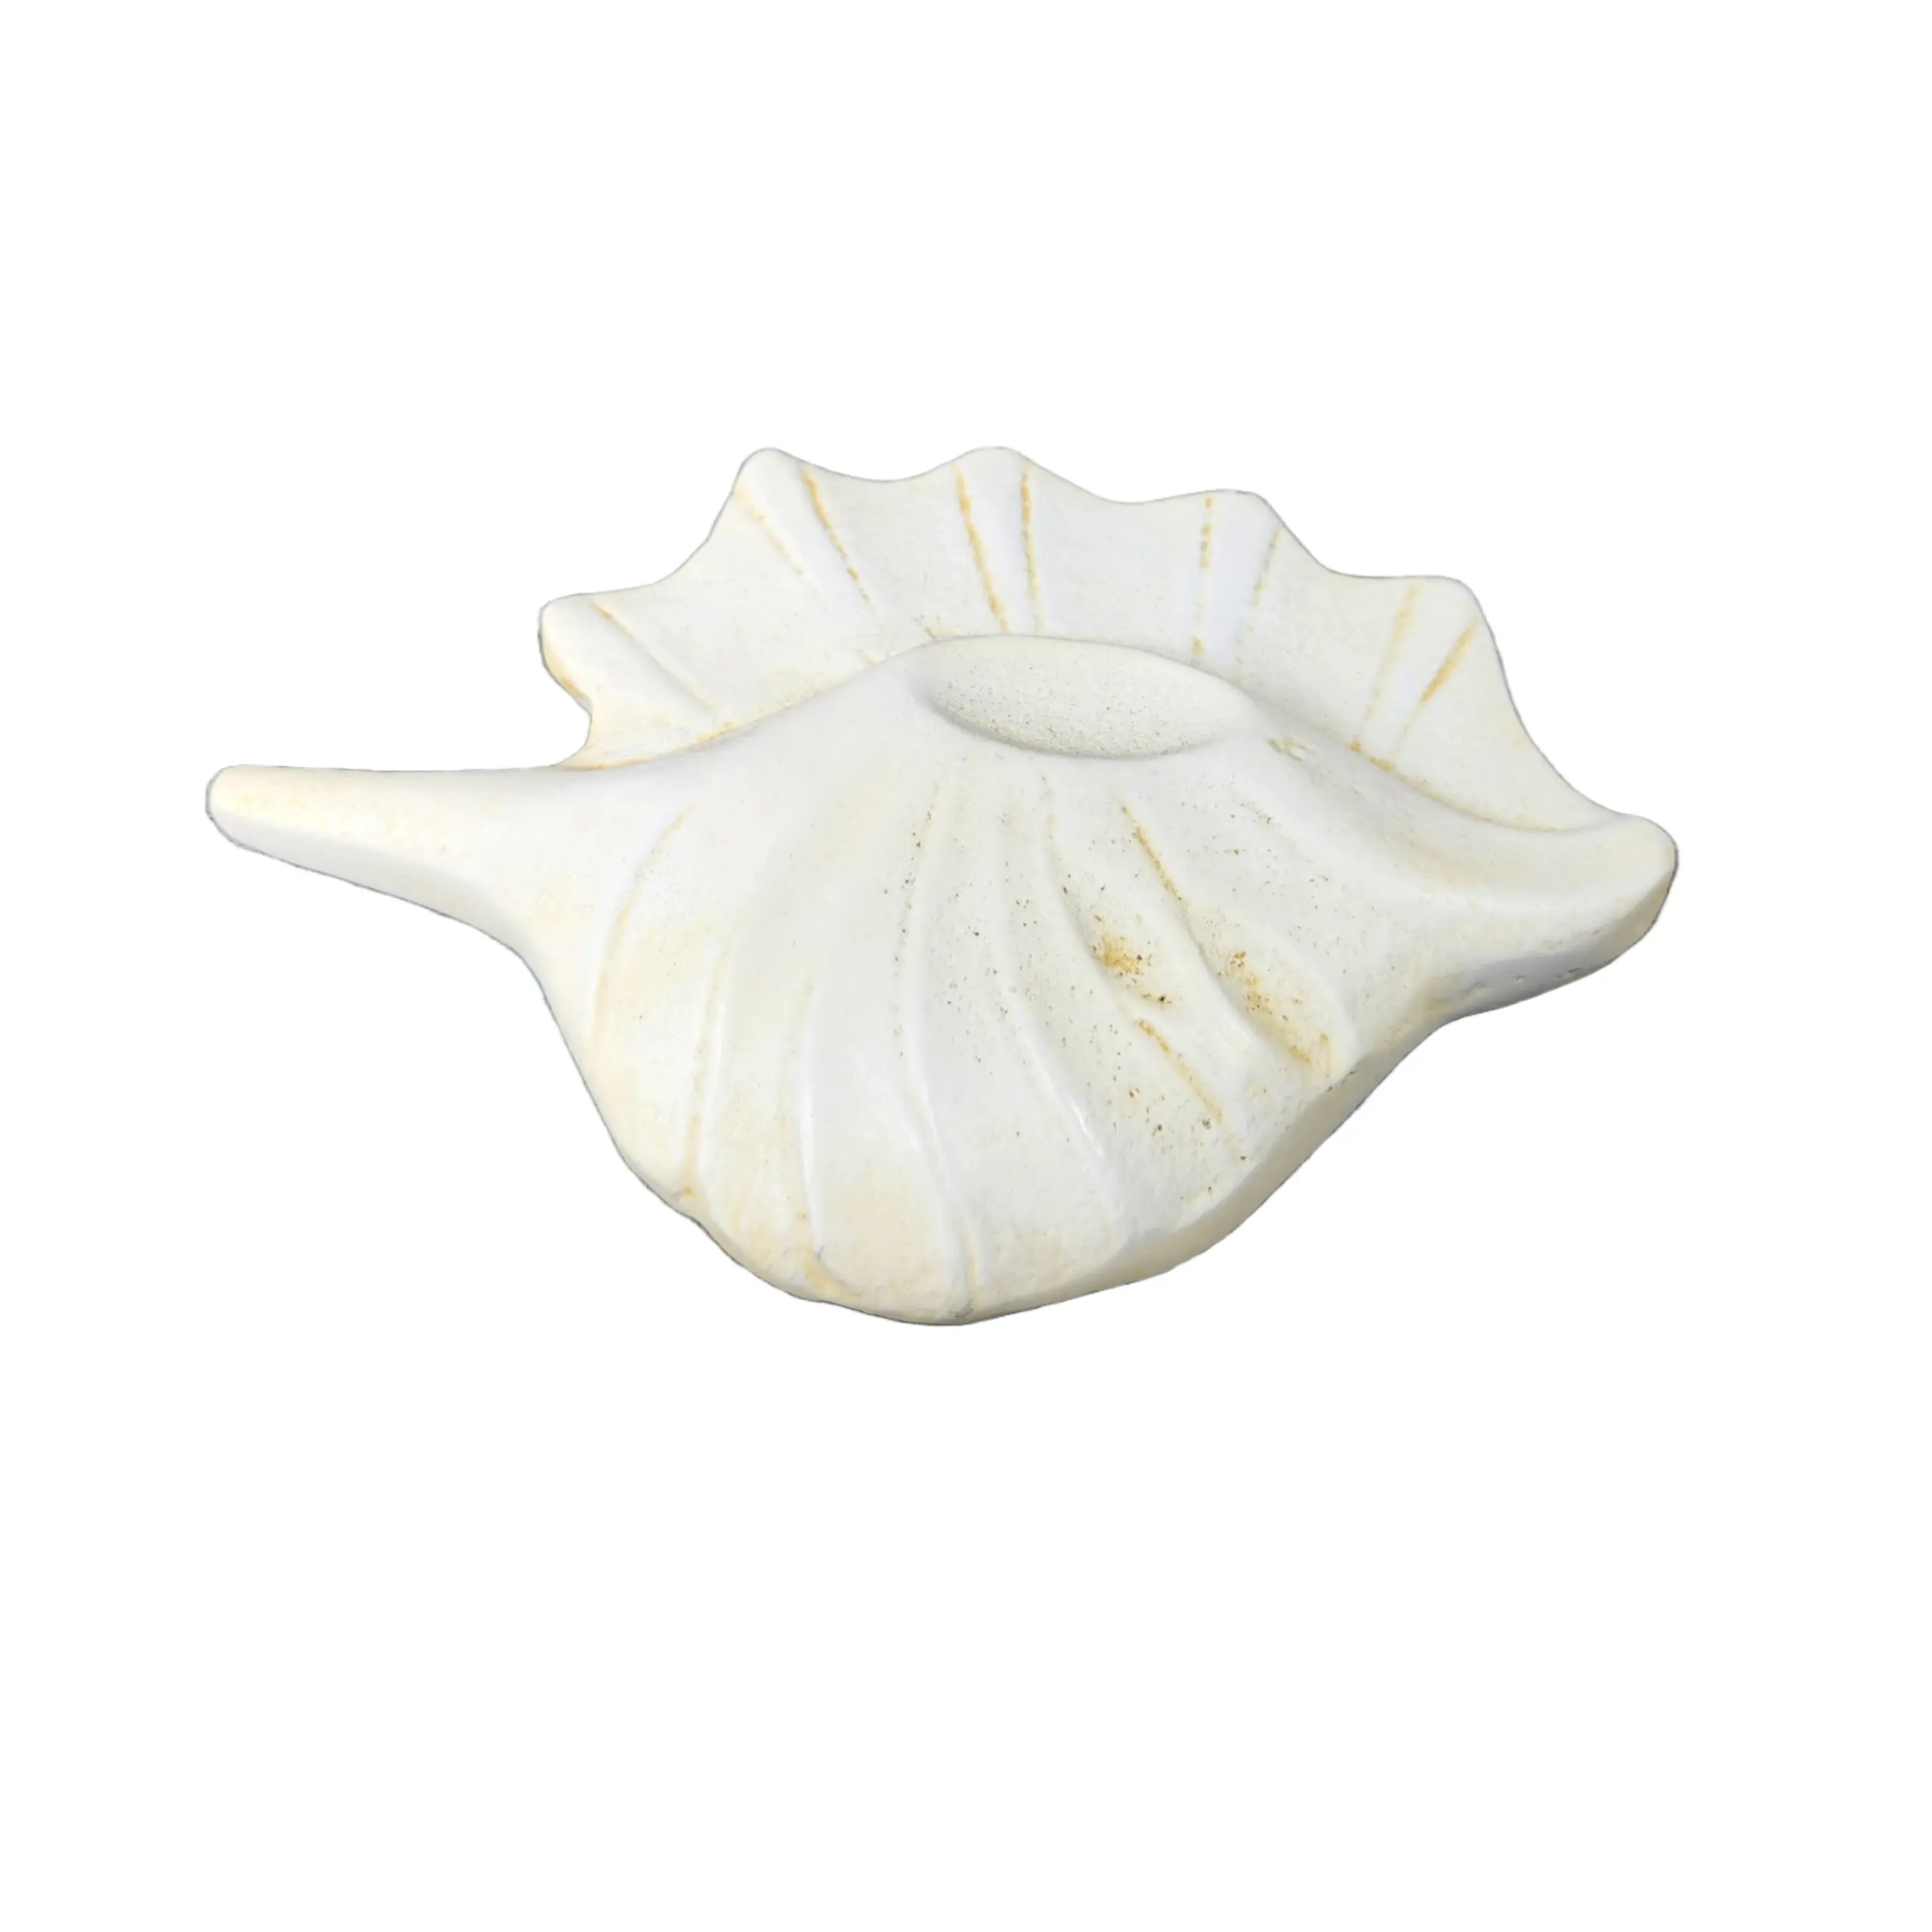 Agradable concha de mar realista, adorno decorativo temático de playa, Concha blanca de Metal sostenible